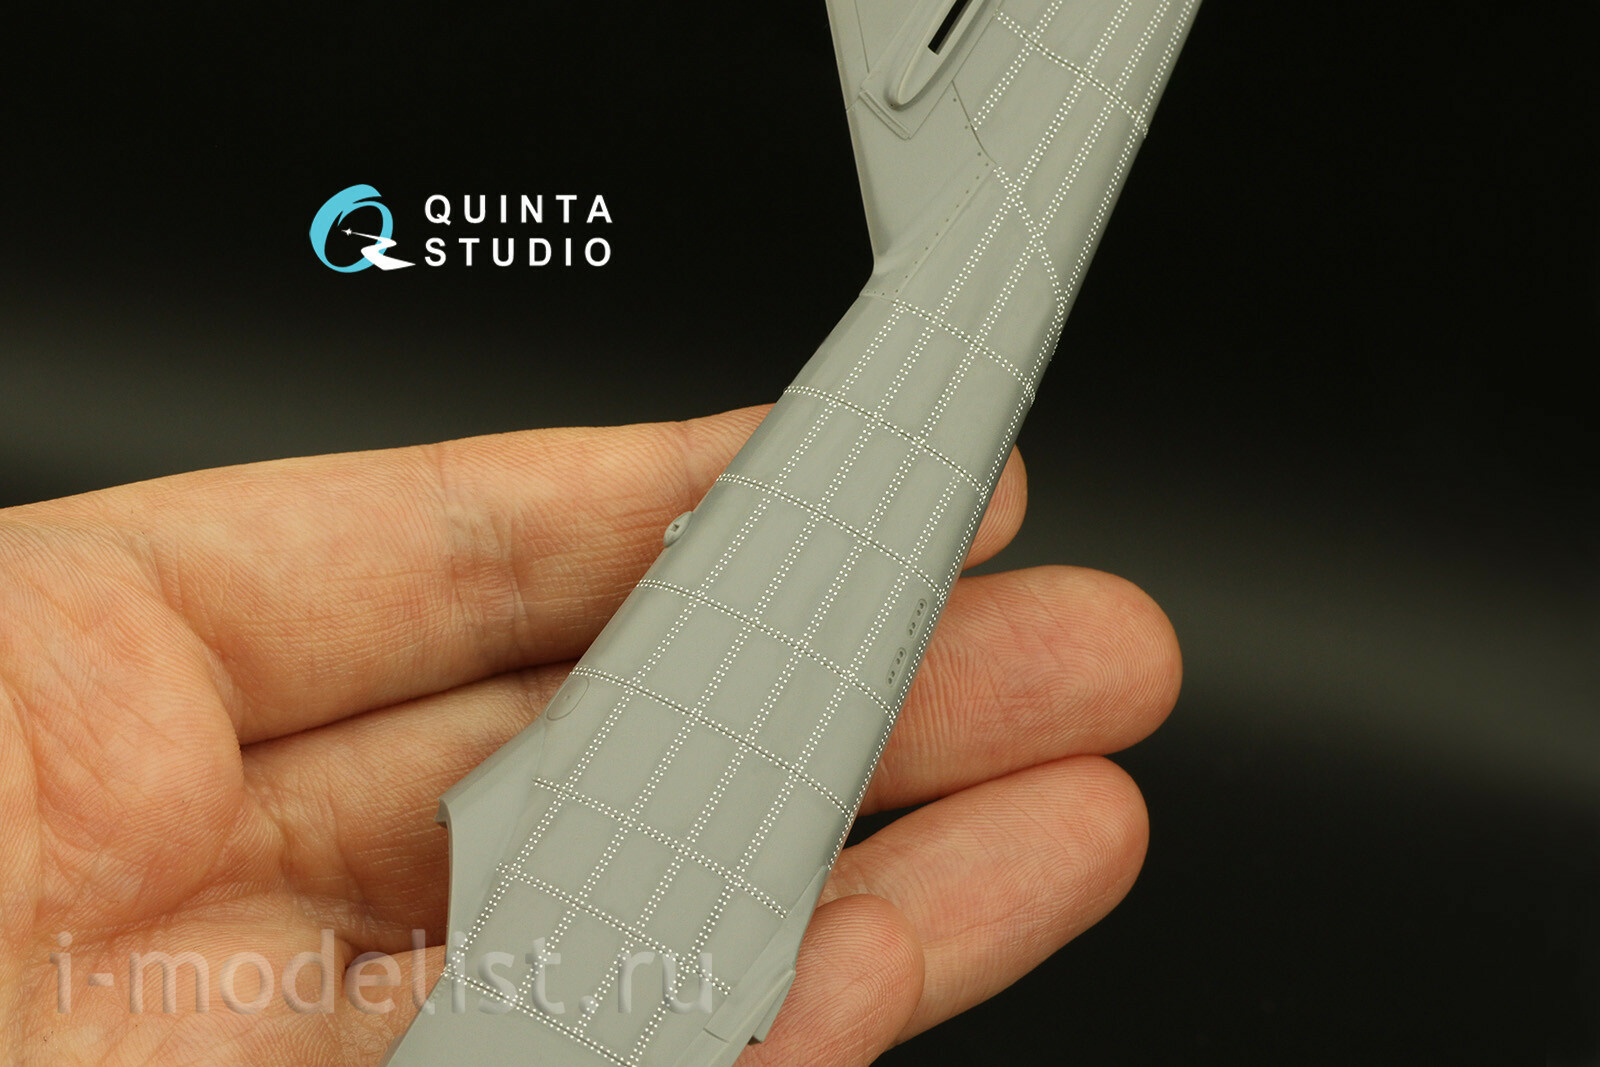 QRV-024 Quinta Studio 1/48 Сдвоенные клепочные ряды (размер клепки 0.15 mm, интервал 0.6 mm), белые, общая длина 6,2 m